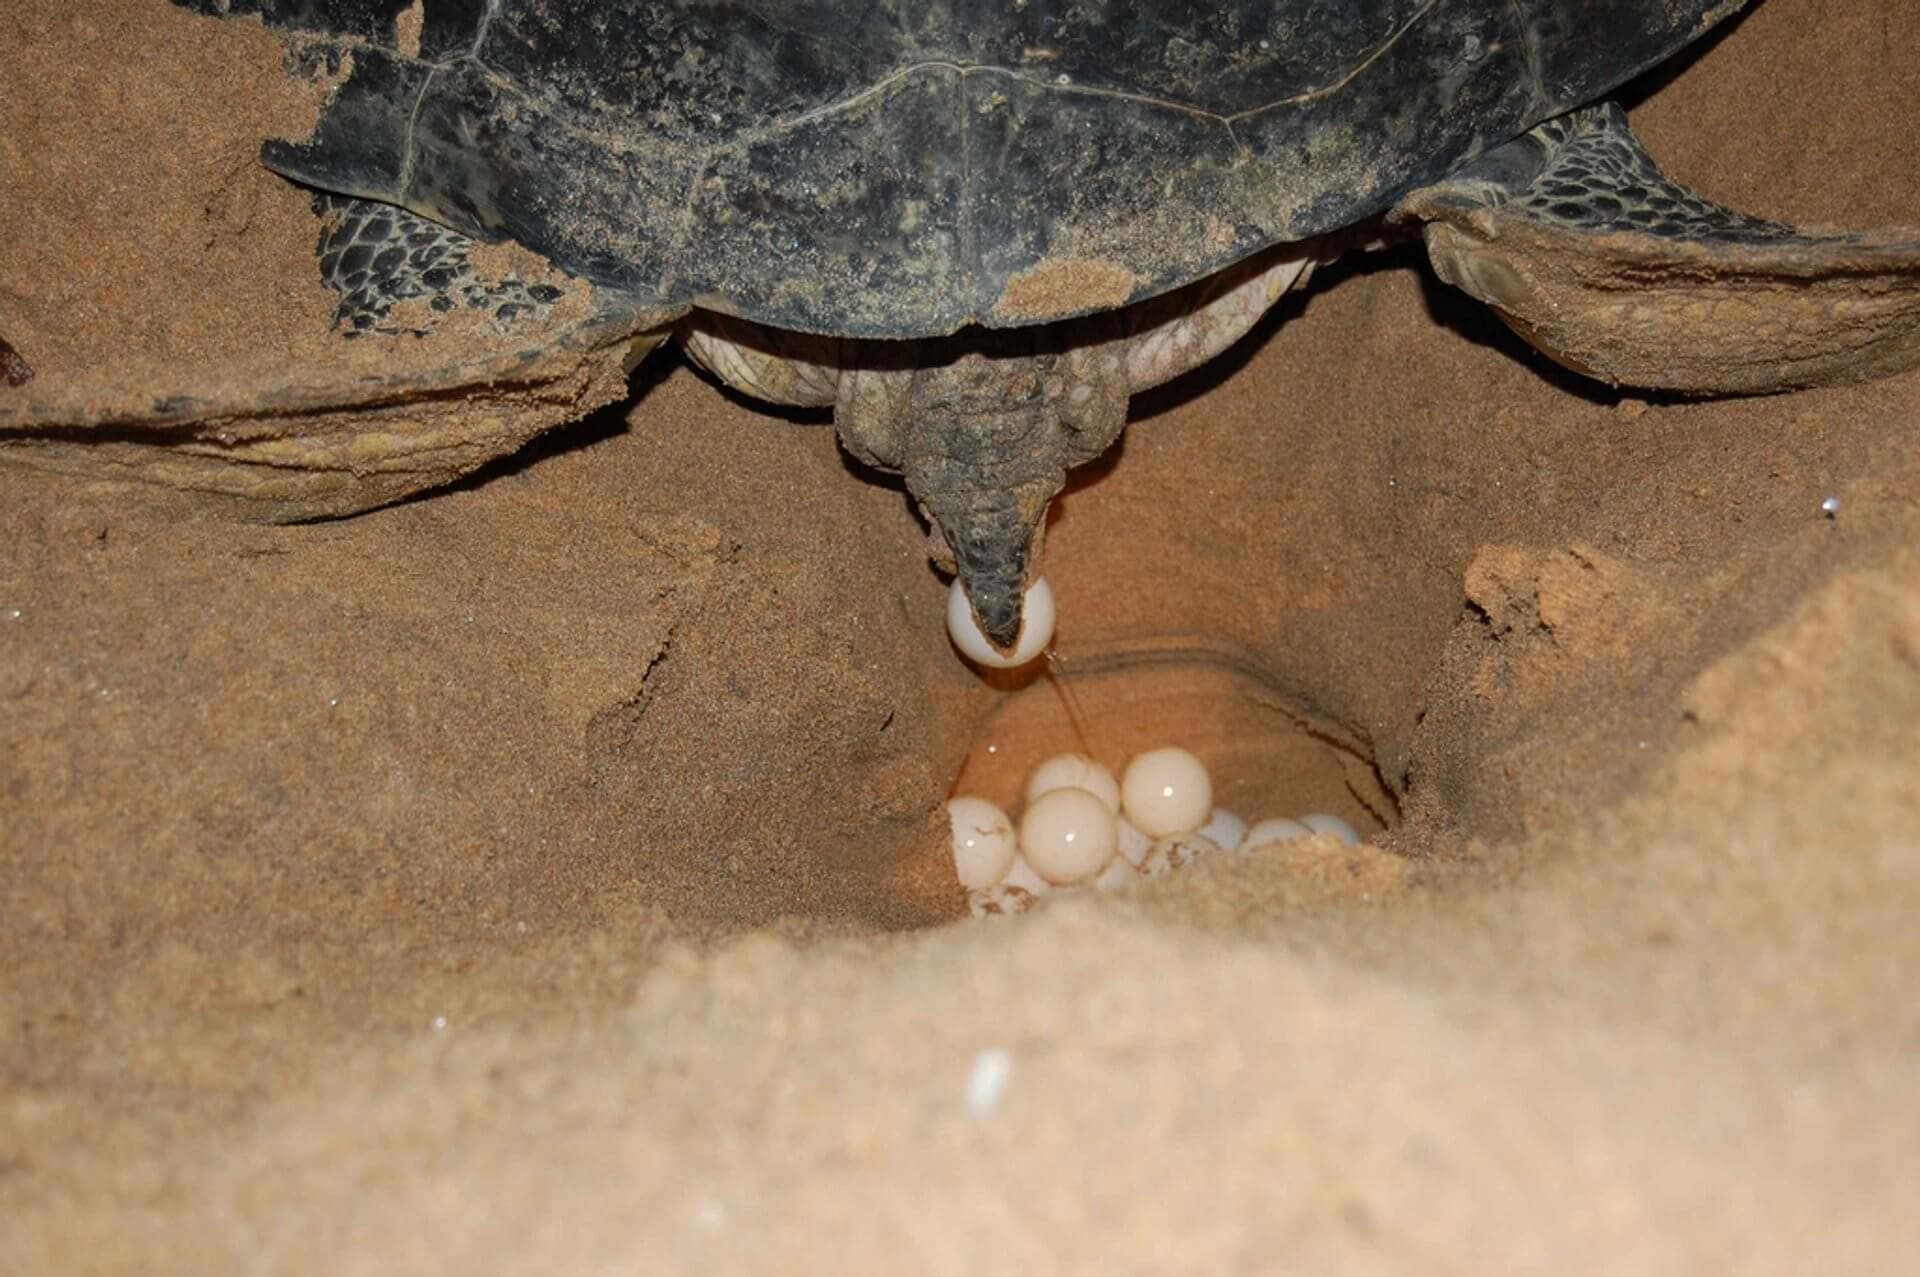 Редкое фото откладывания яиц морской черепахи на пляже Рекава в Шри-Ланке.